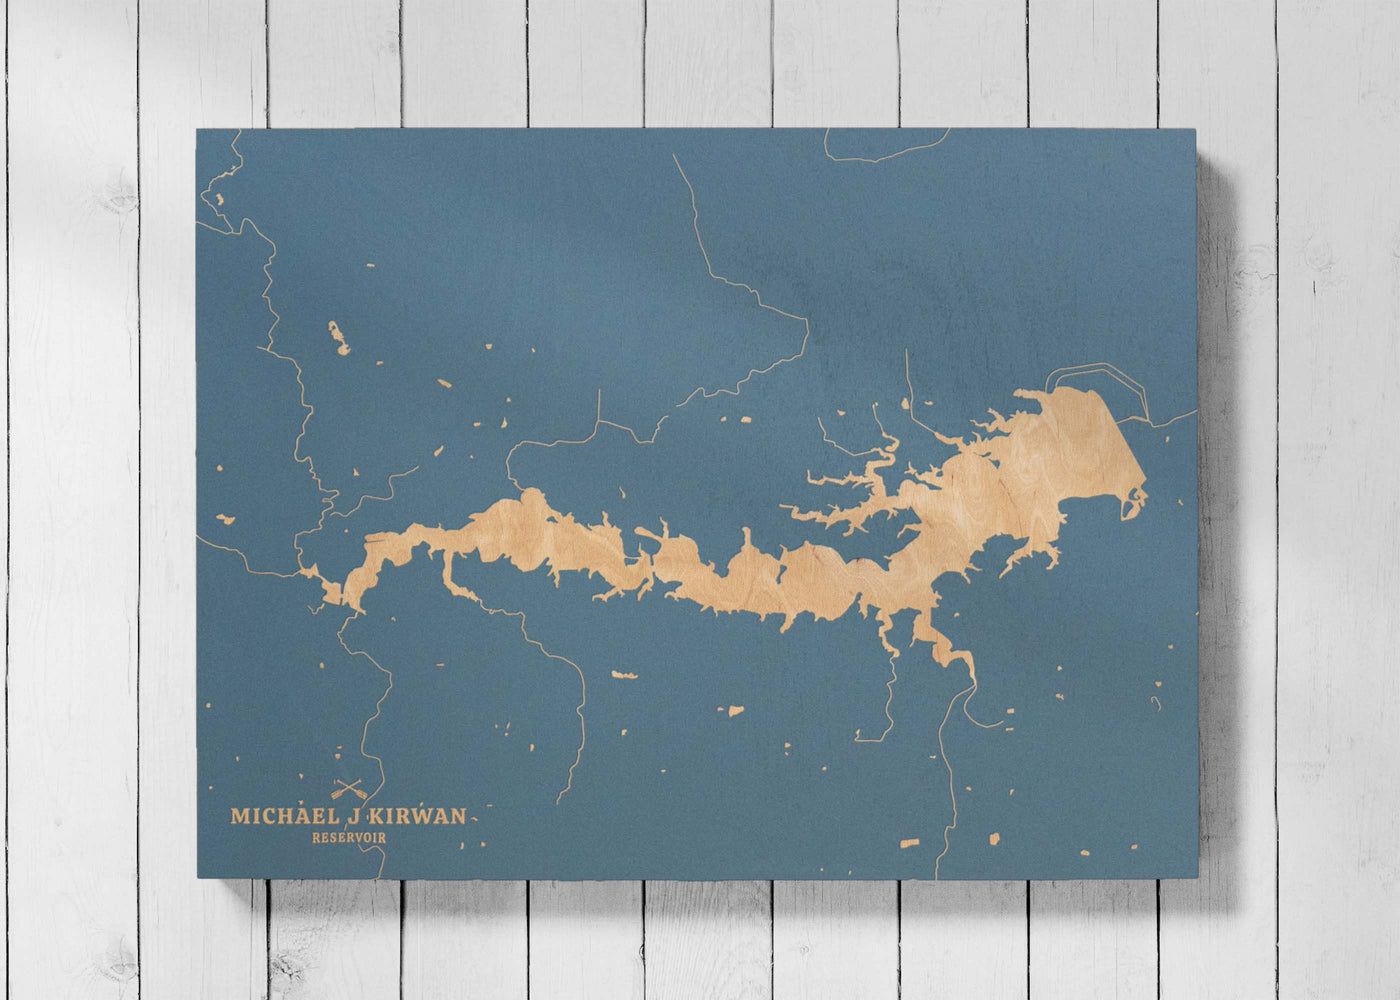 Michael J Kirwan Reservoir, Ohio Lake Map